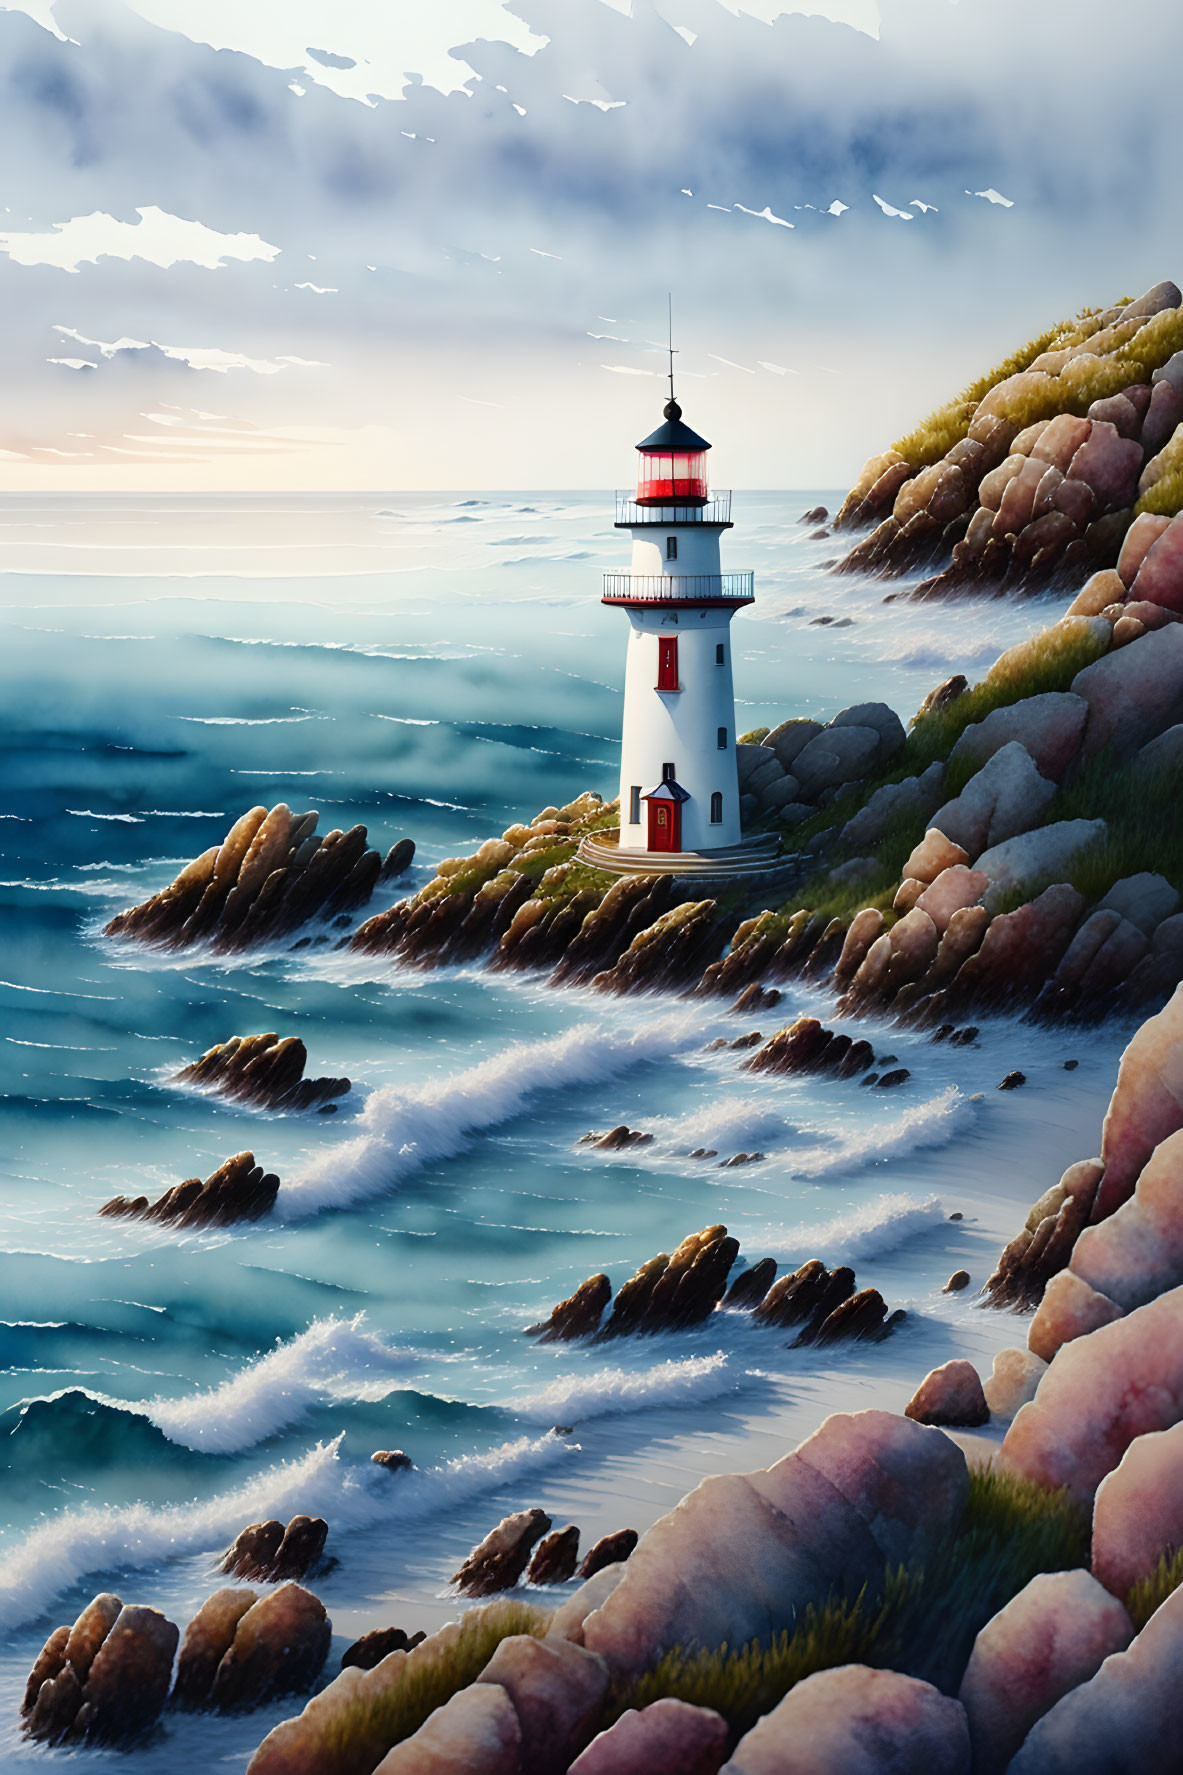 Serene lighthouse on rugged coastline with crashing waves